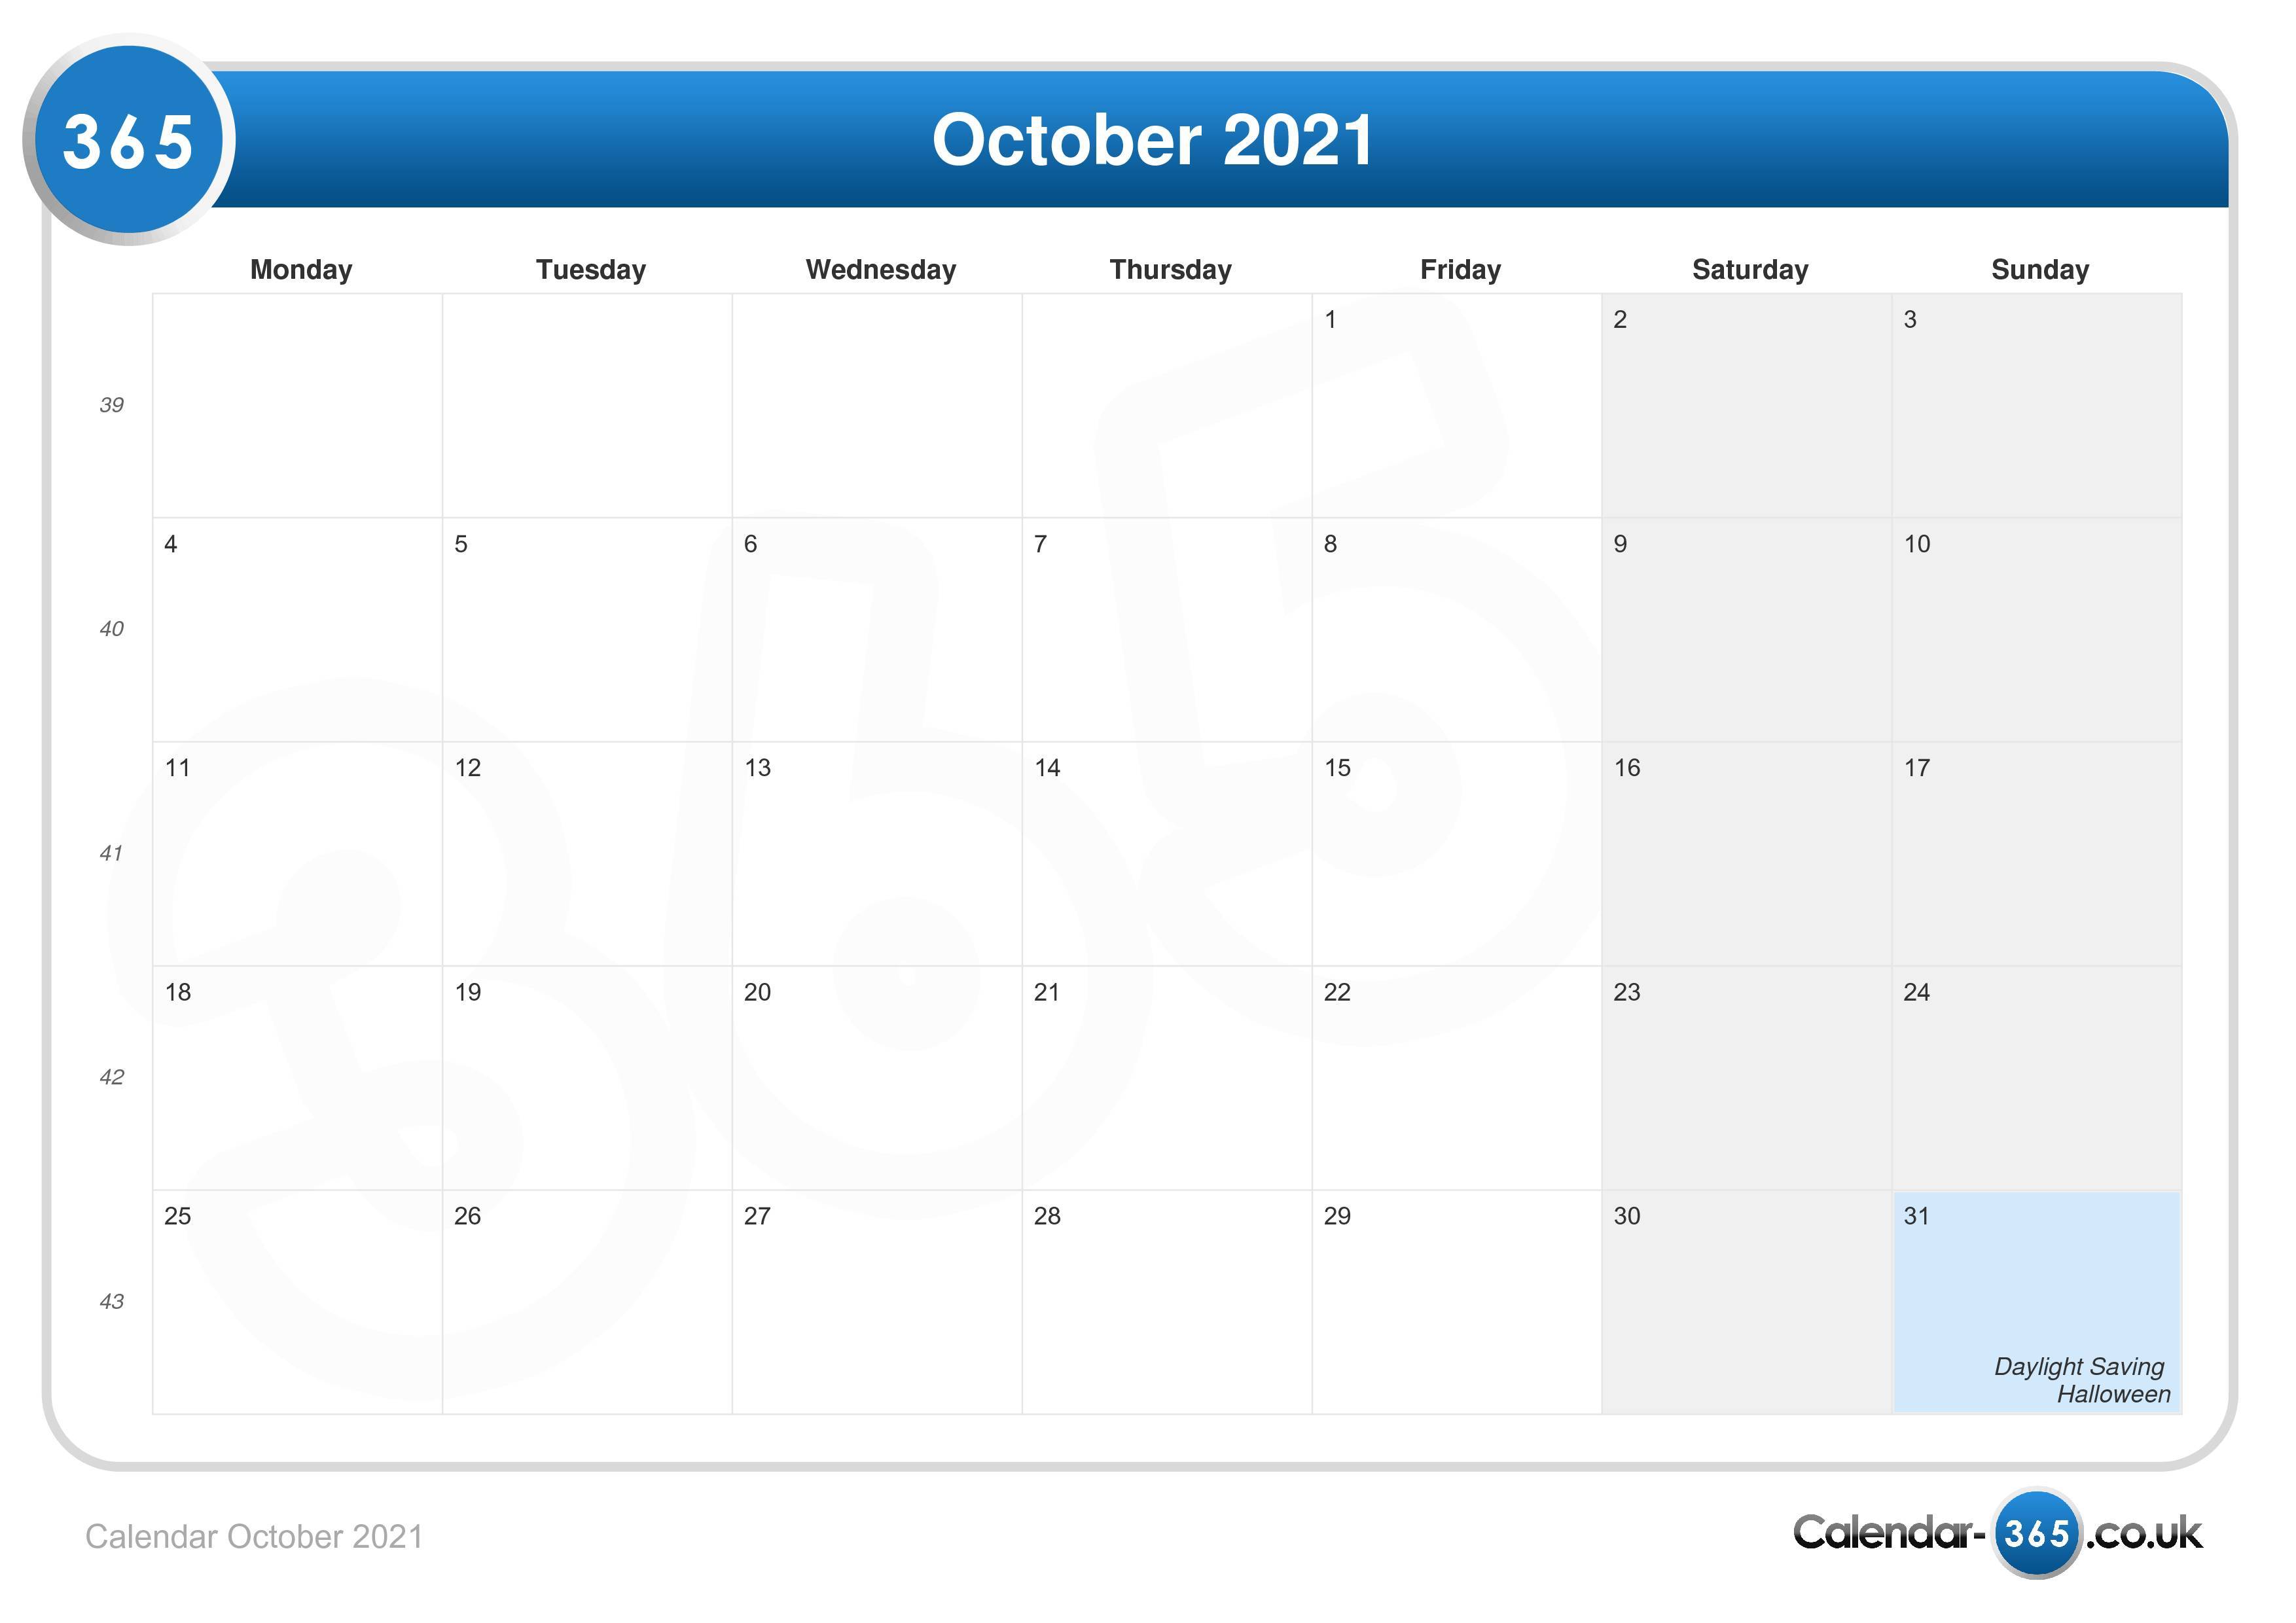 moon calendar october 2021 Calendar October 2021 moon calendar october 2021